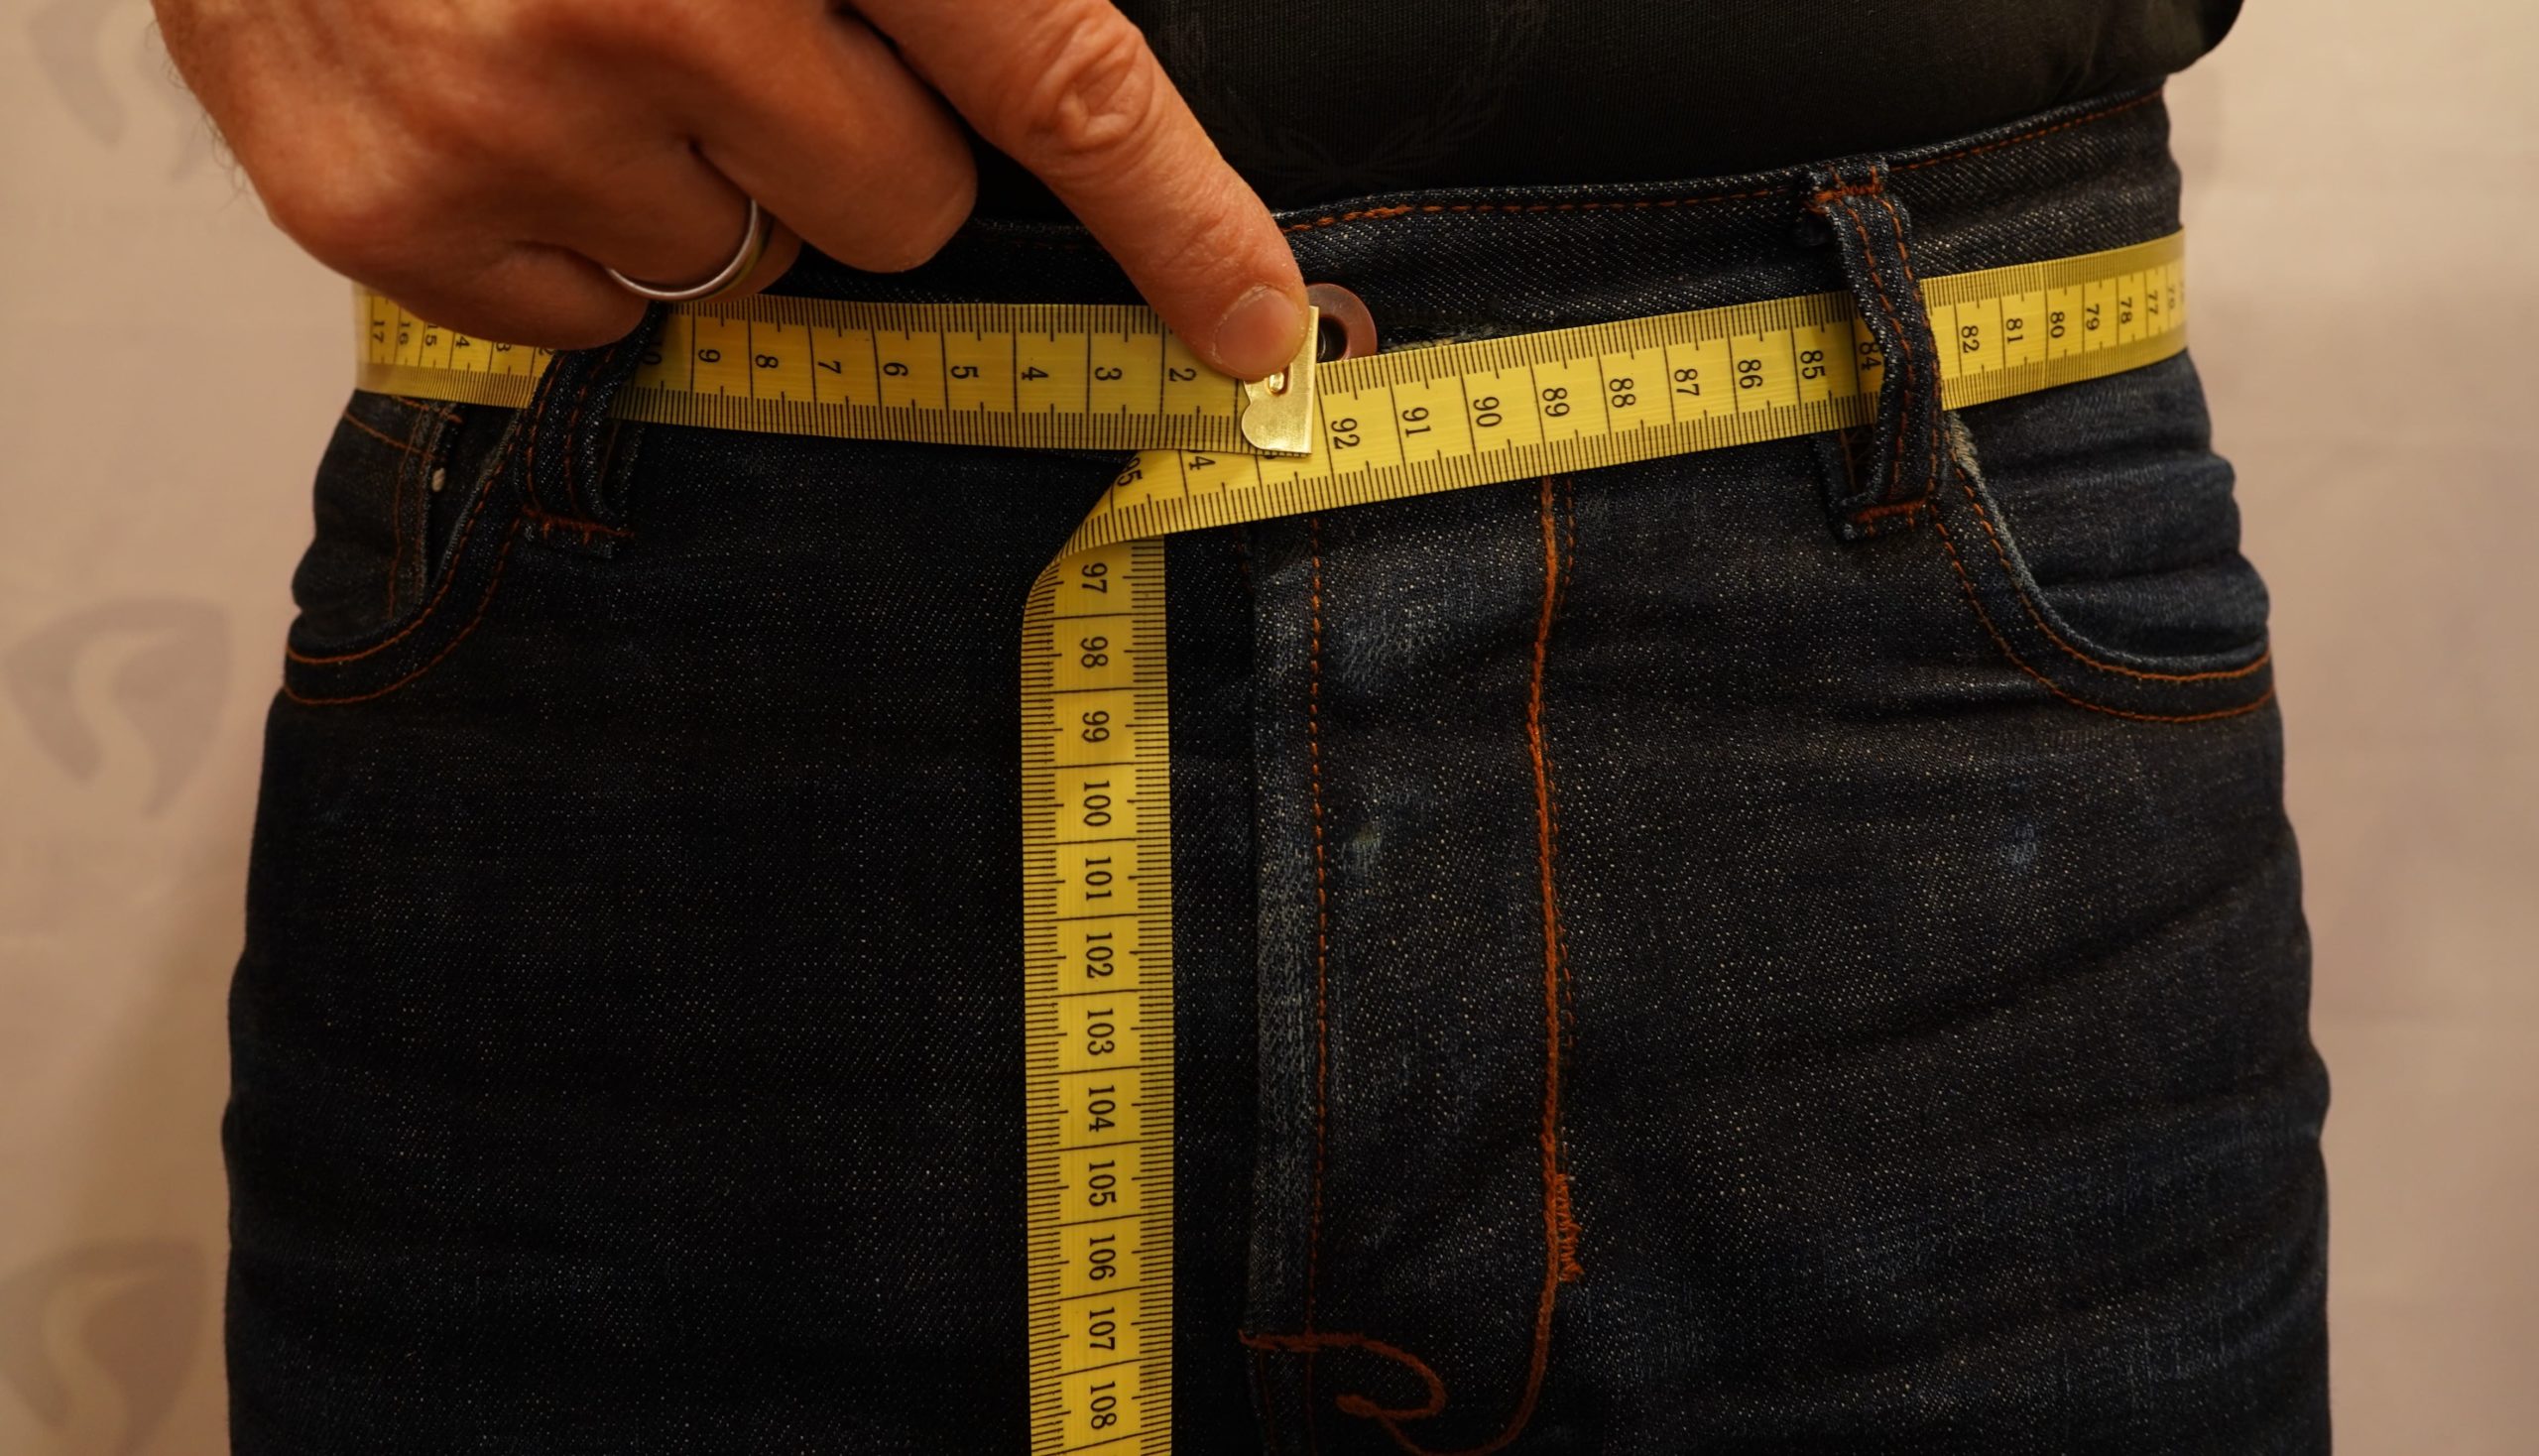 Gürtellänge selber messen mit eigener Hose